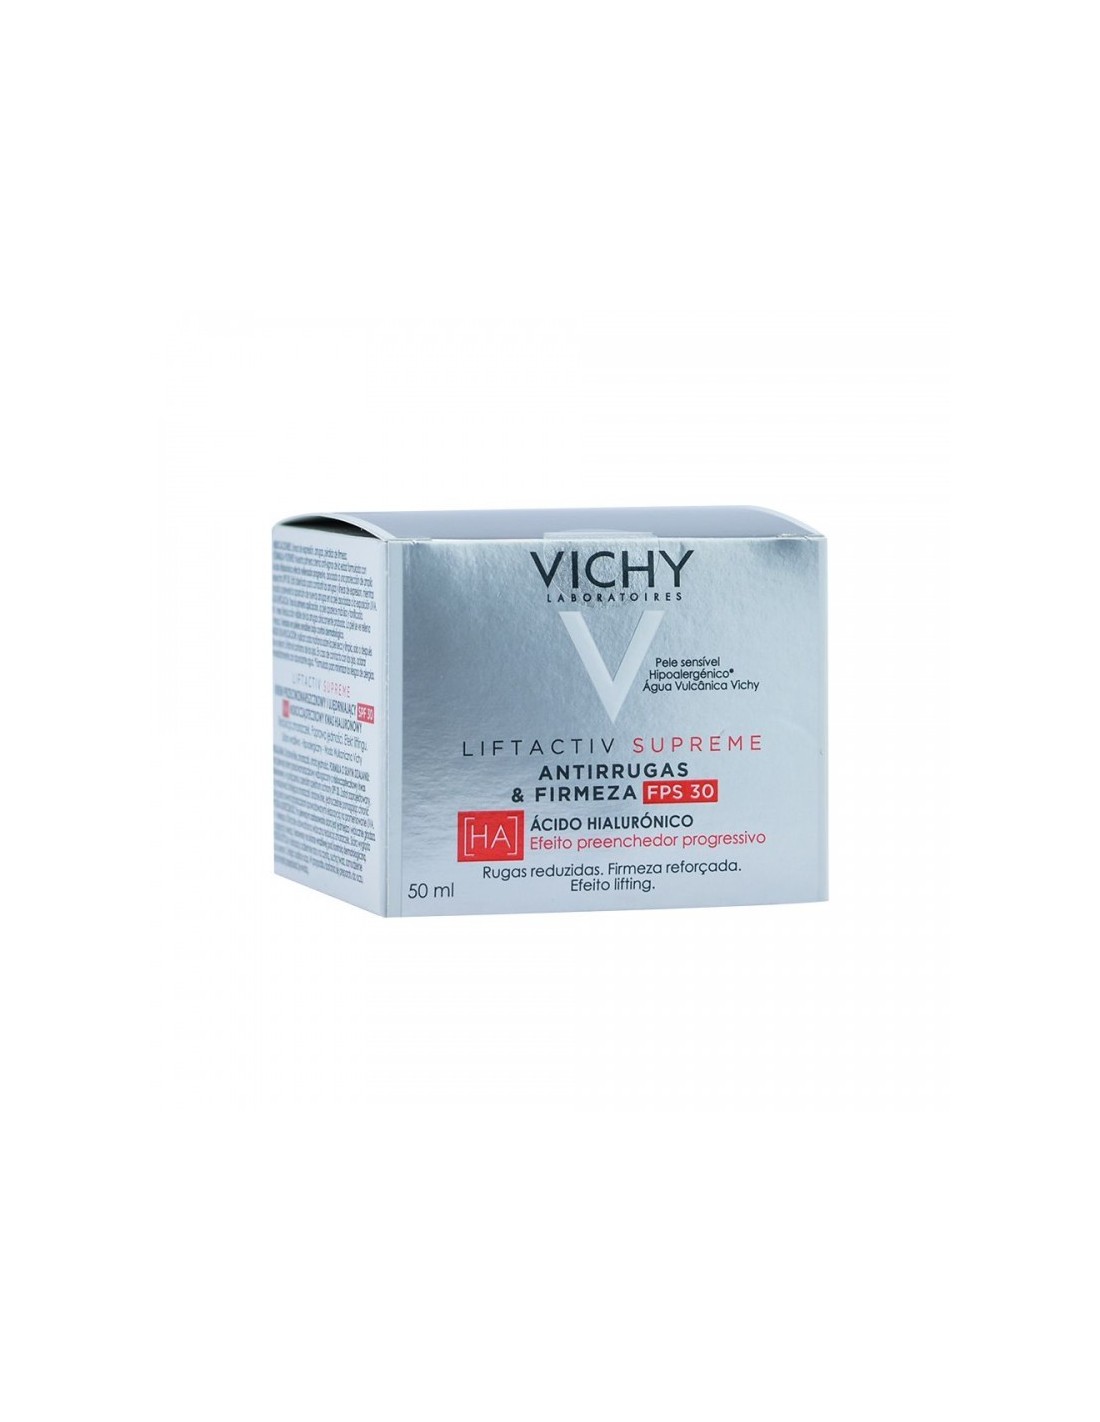 Vichy Lifactiv Supreme Crema de Día SPF30